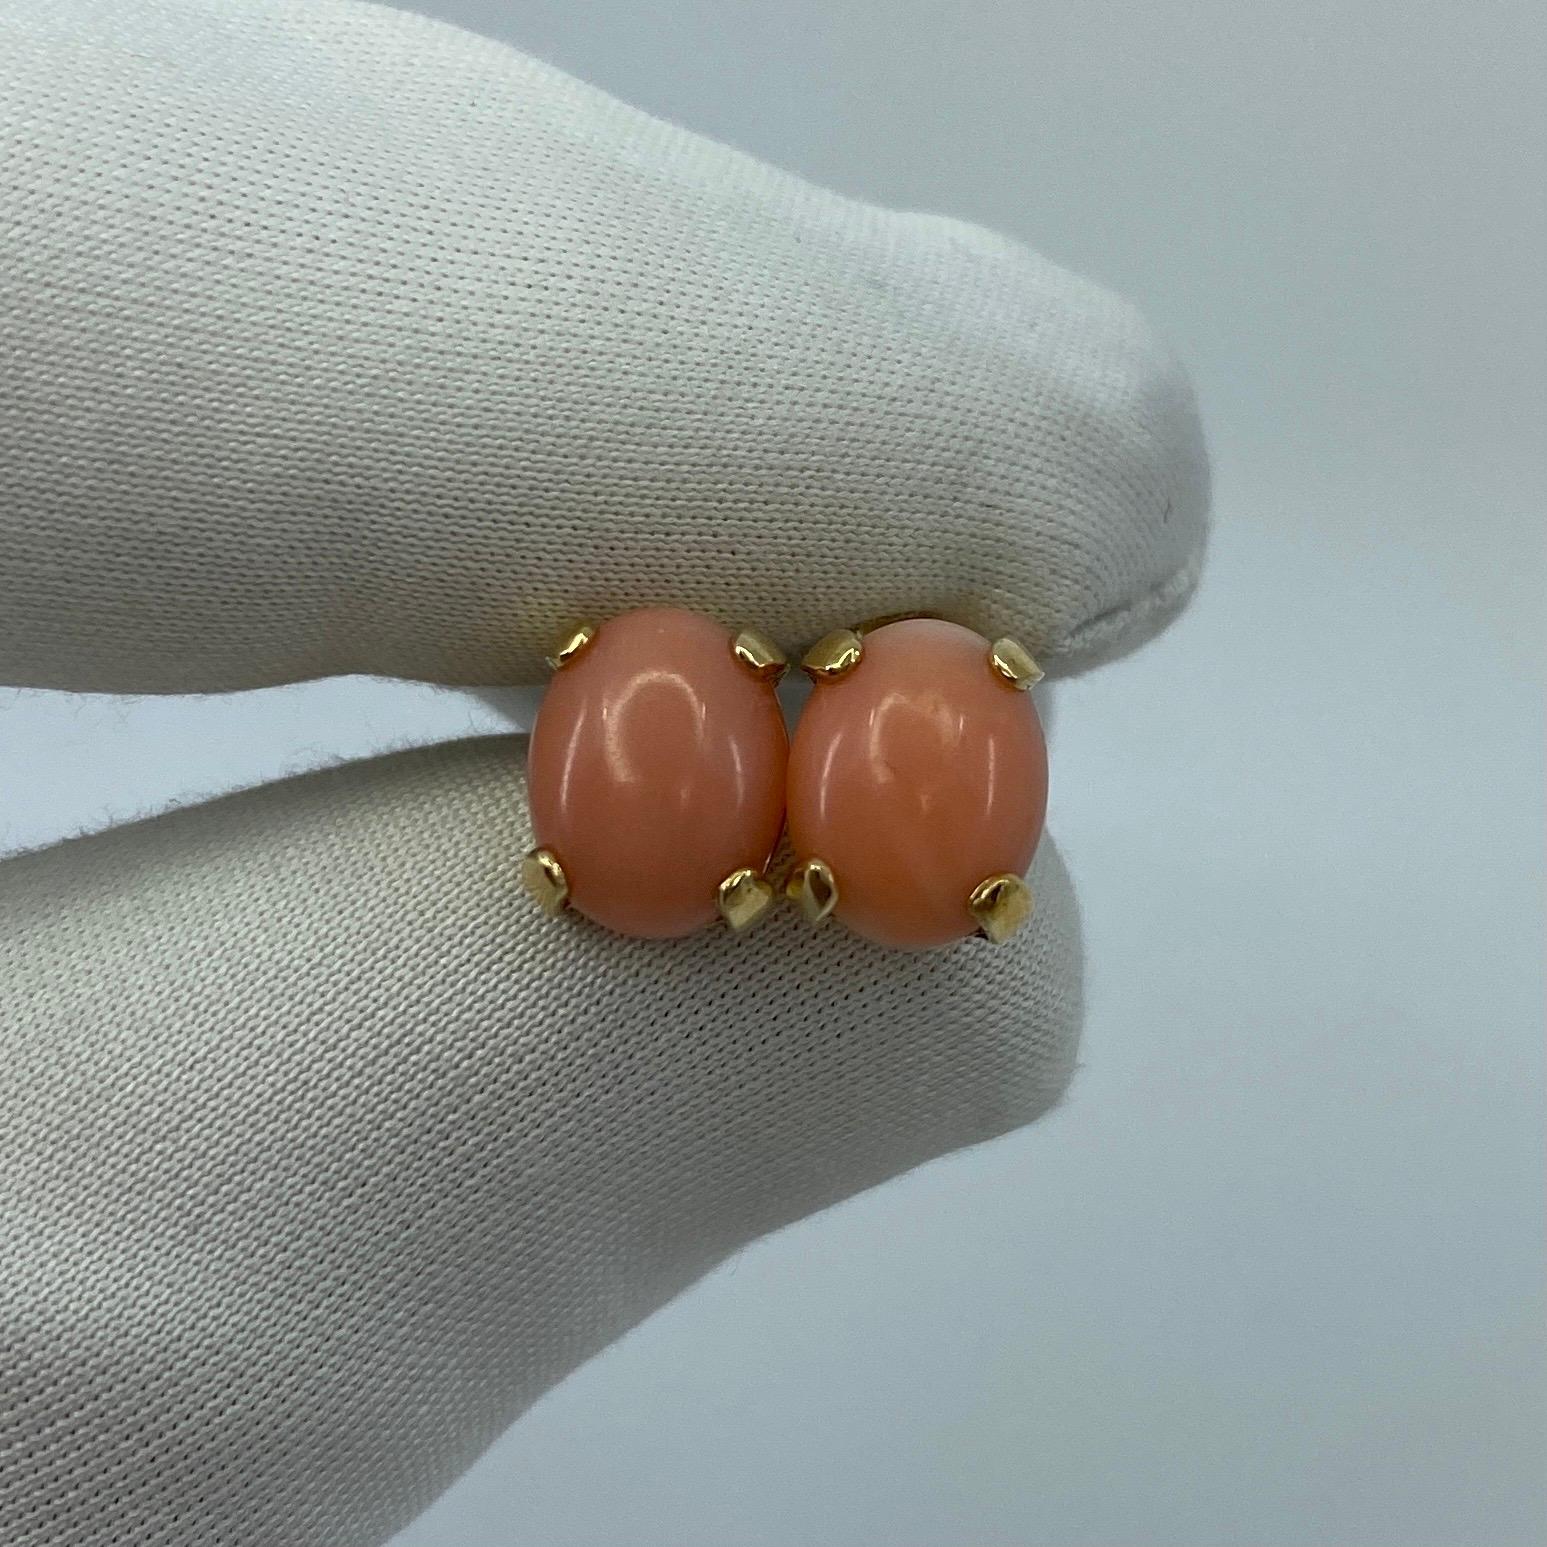 Natural 4 Carat Pink Orange Coral Earring Stud & Pendant Set 14k Yellow Gold 2